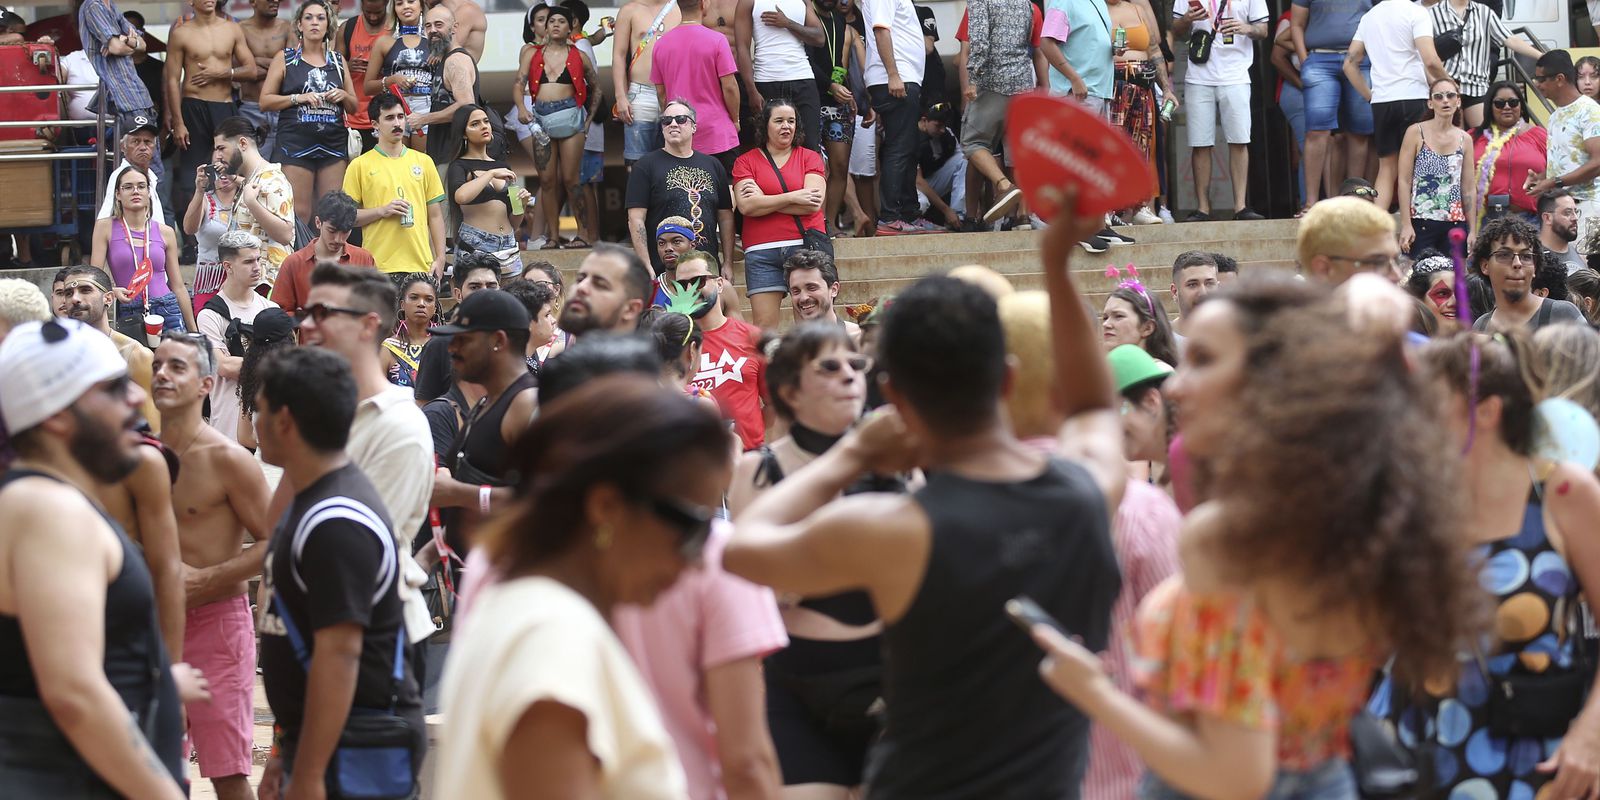 Espaço de redução de danos acolhe intoxicados no carnaval de Brasília